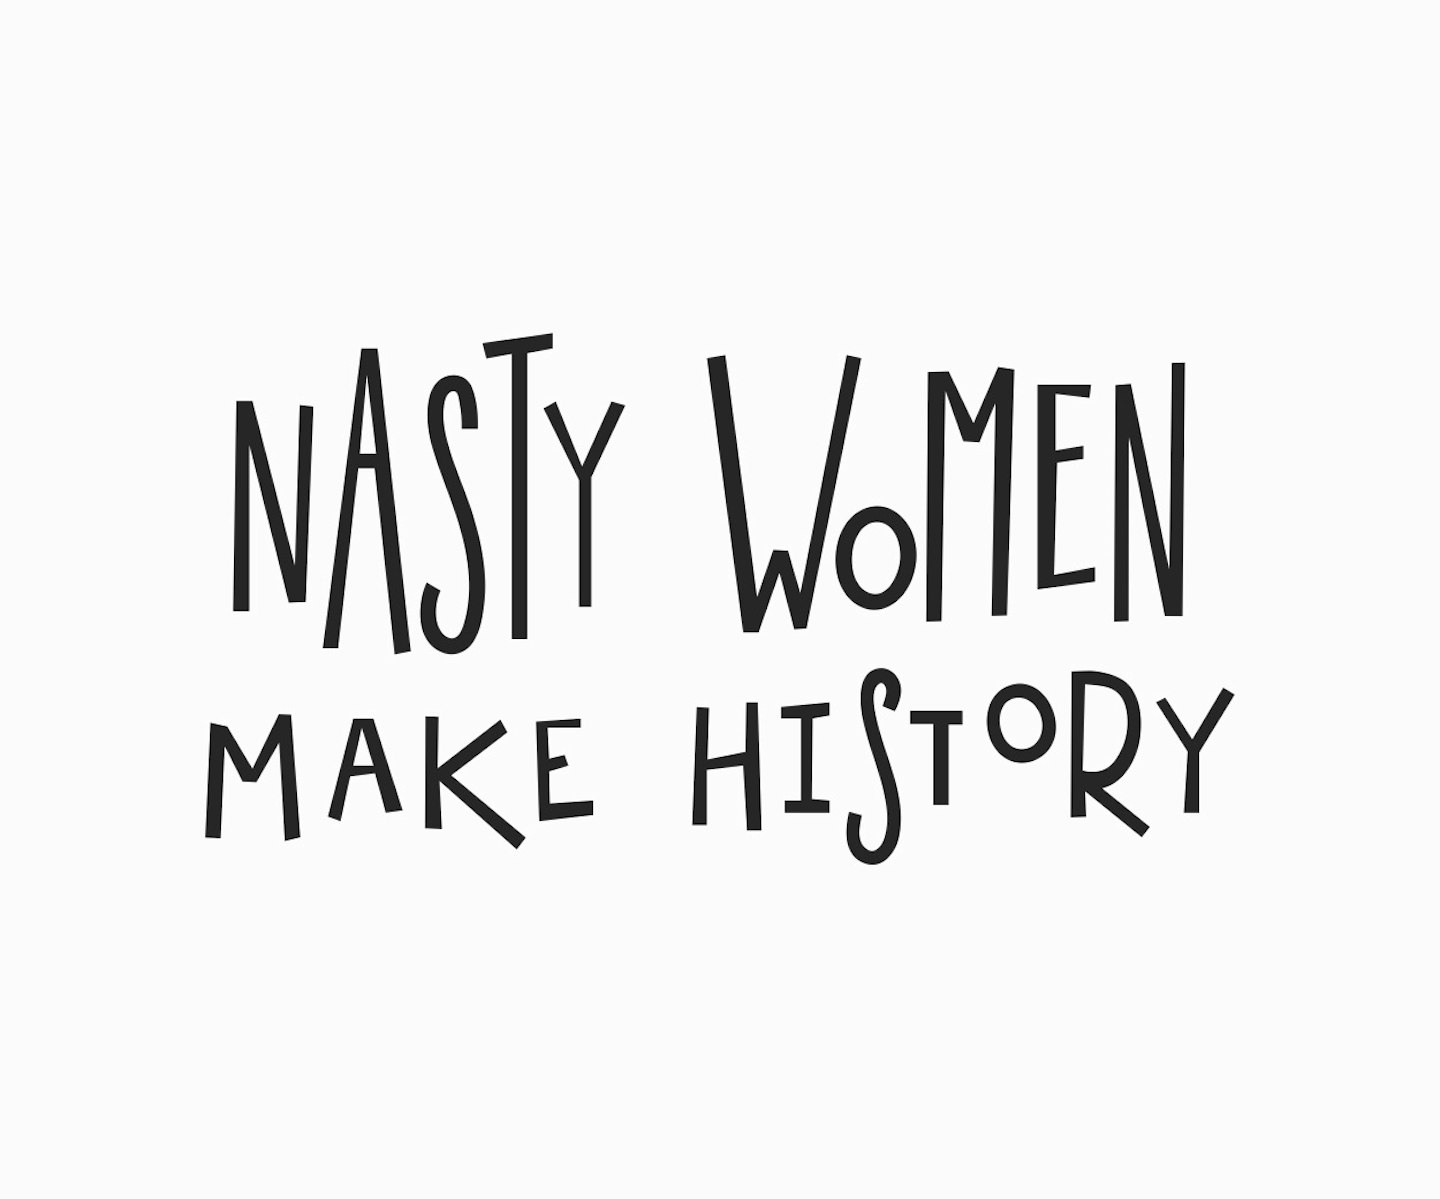 Nast women, make history